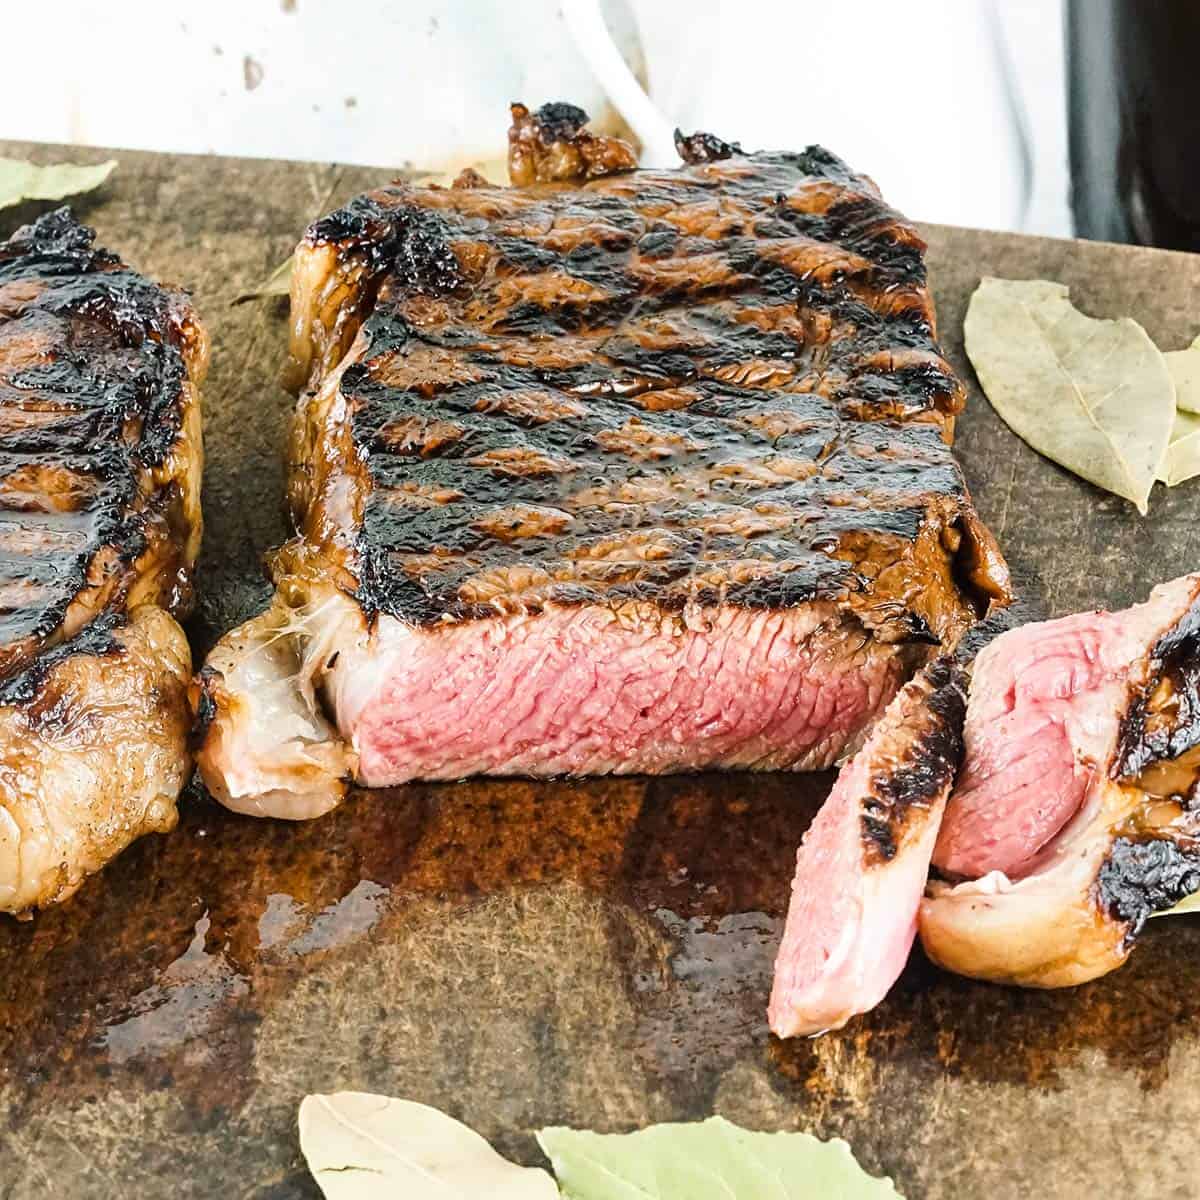 New york strip steak sliced on a cutting board